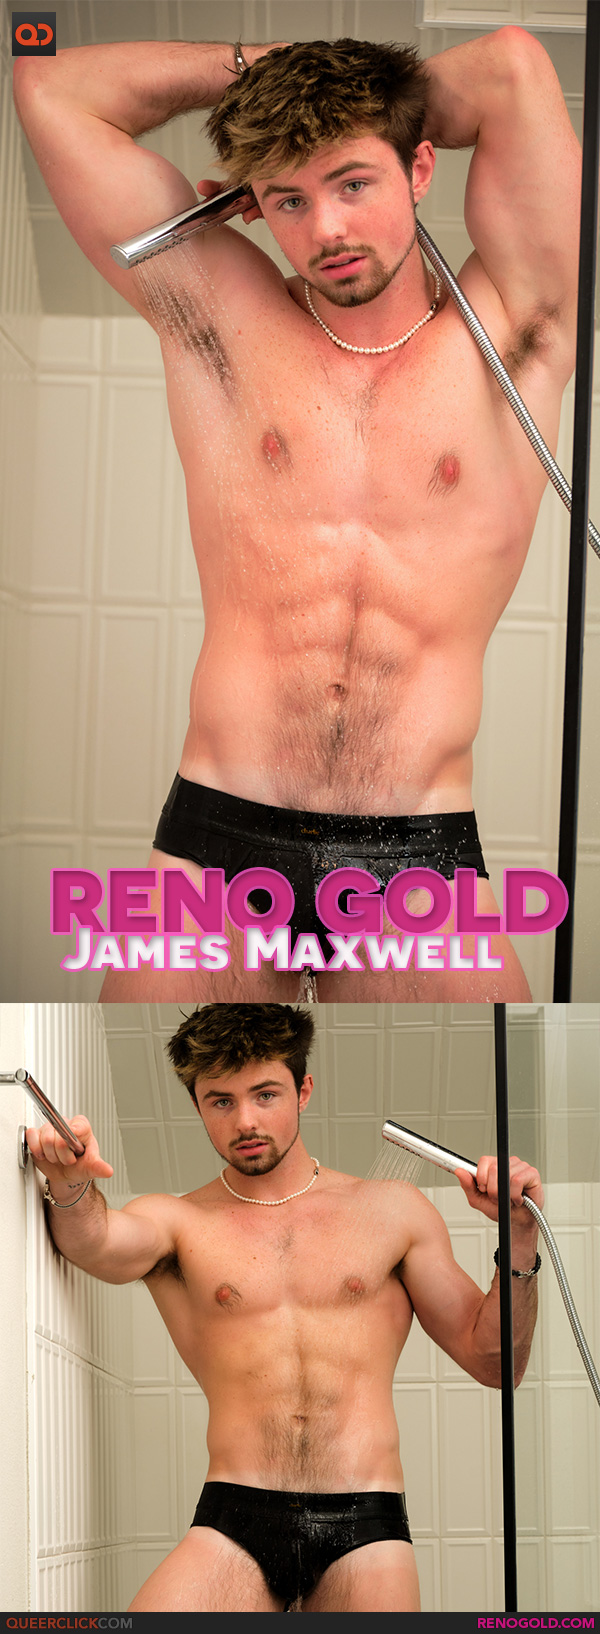 Reno Gold: James Maxwell